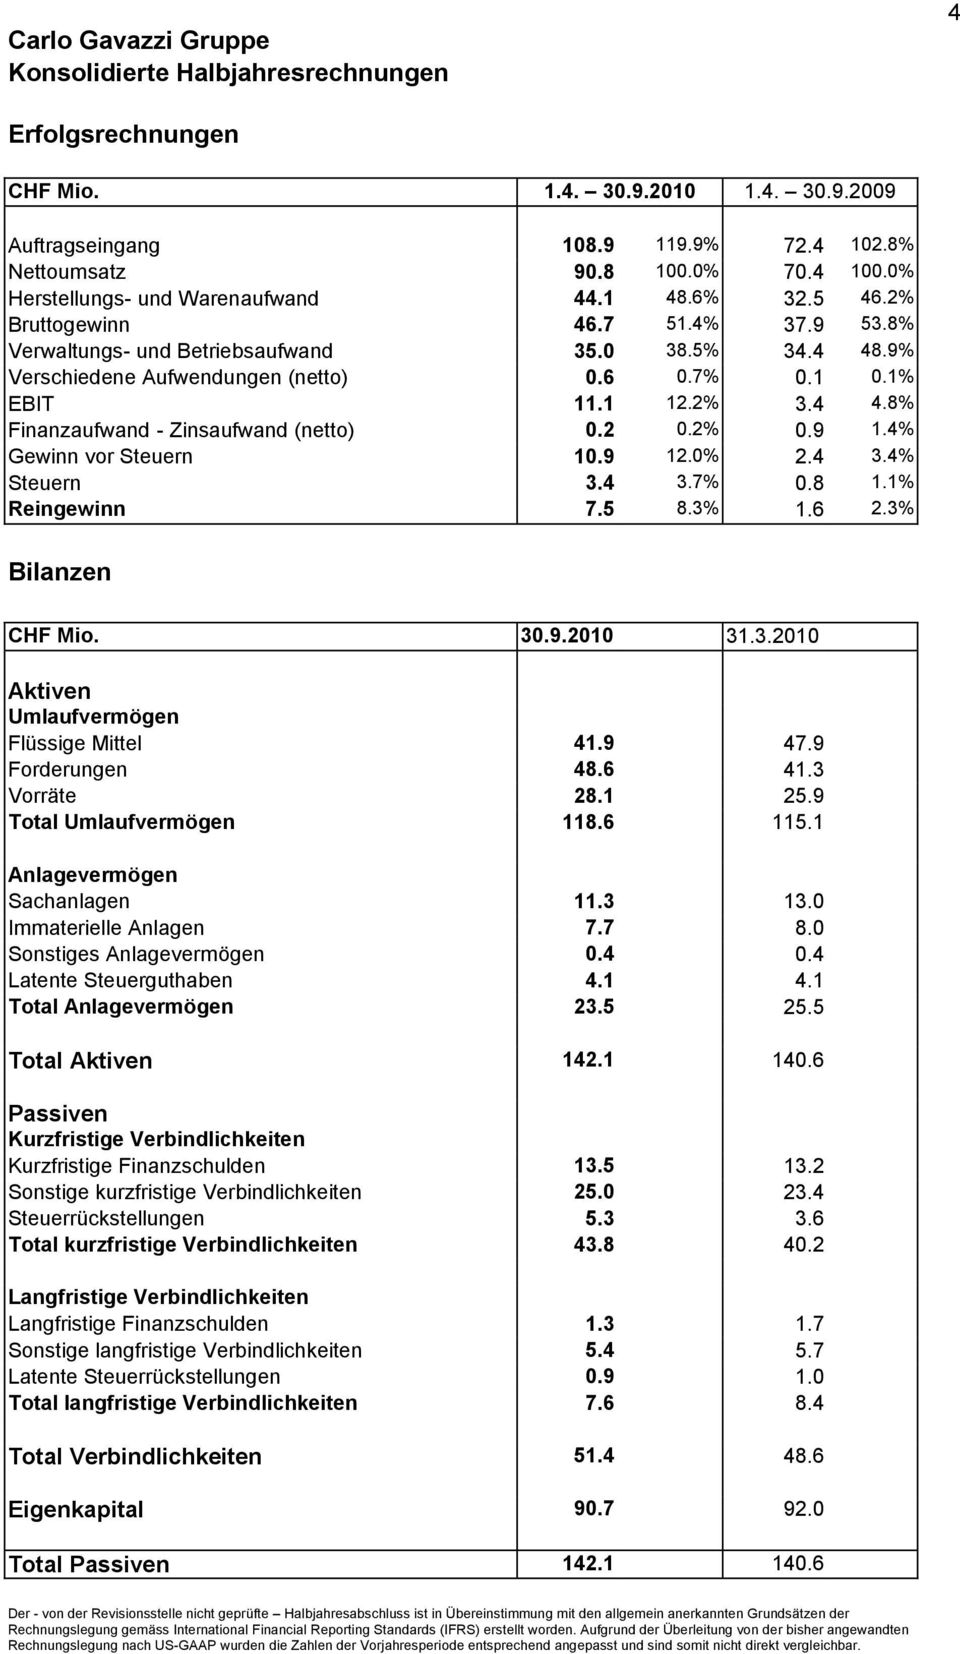 1% EBIT 11.1 12.2% 3.4 4.8% Finanzaufwand - Zinsaufwand (netto) 0.2 0.2% 0.9 1.4% Gewinn vor Steuern 10.9 12.0% 2.4 3.4% Steuern 3.4 3.7% 0.8 1.1% Reingewinn 7.5 8.3% 1.6 2.3% Bilanzen CHF Mio. 30.9.2010 31.